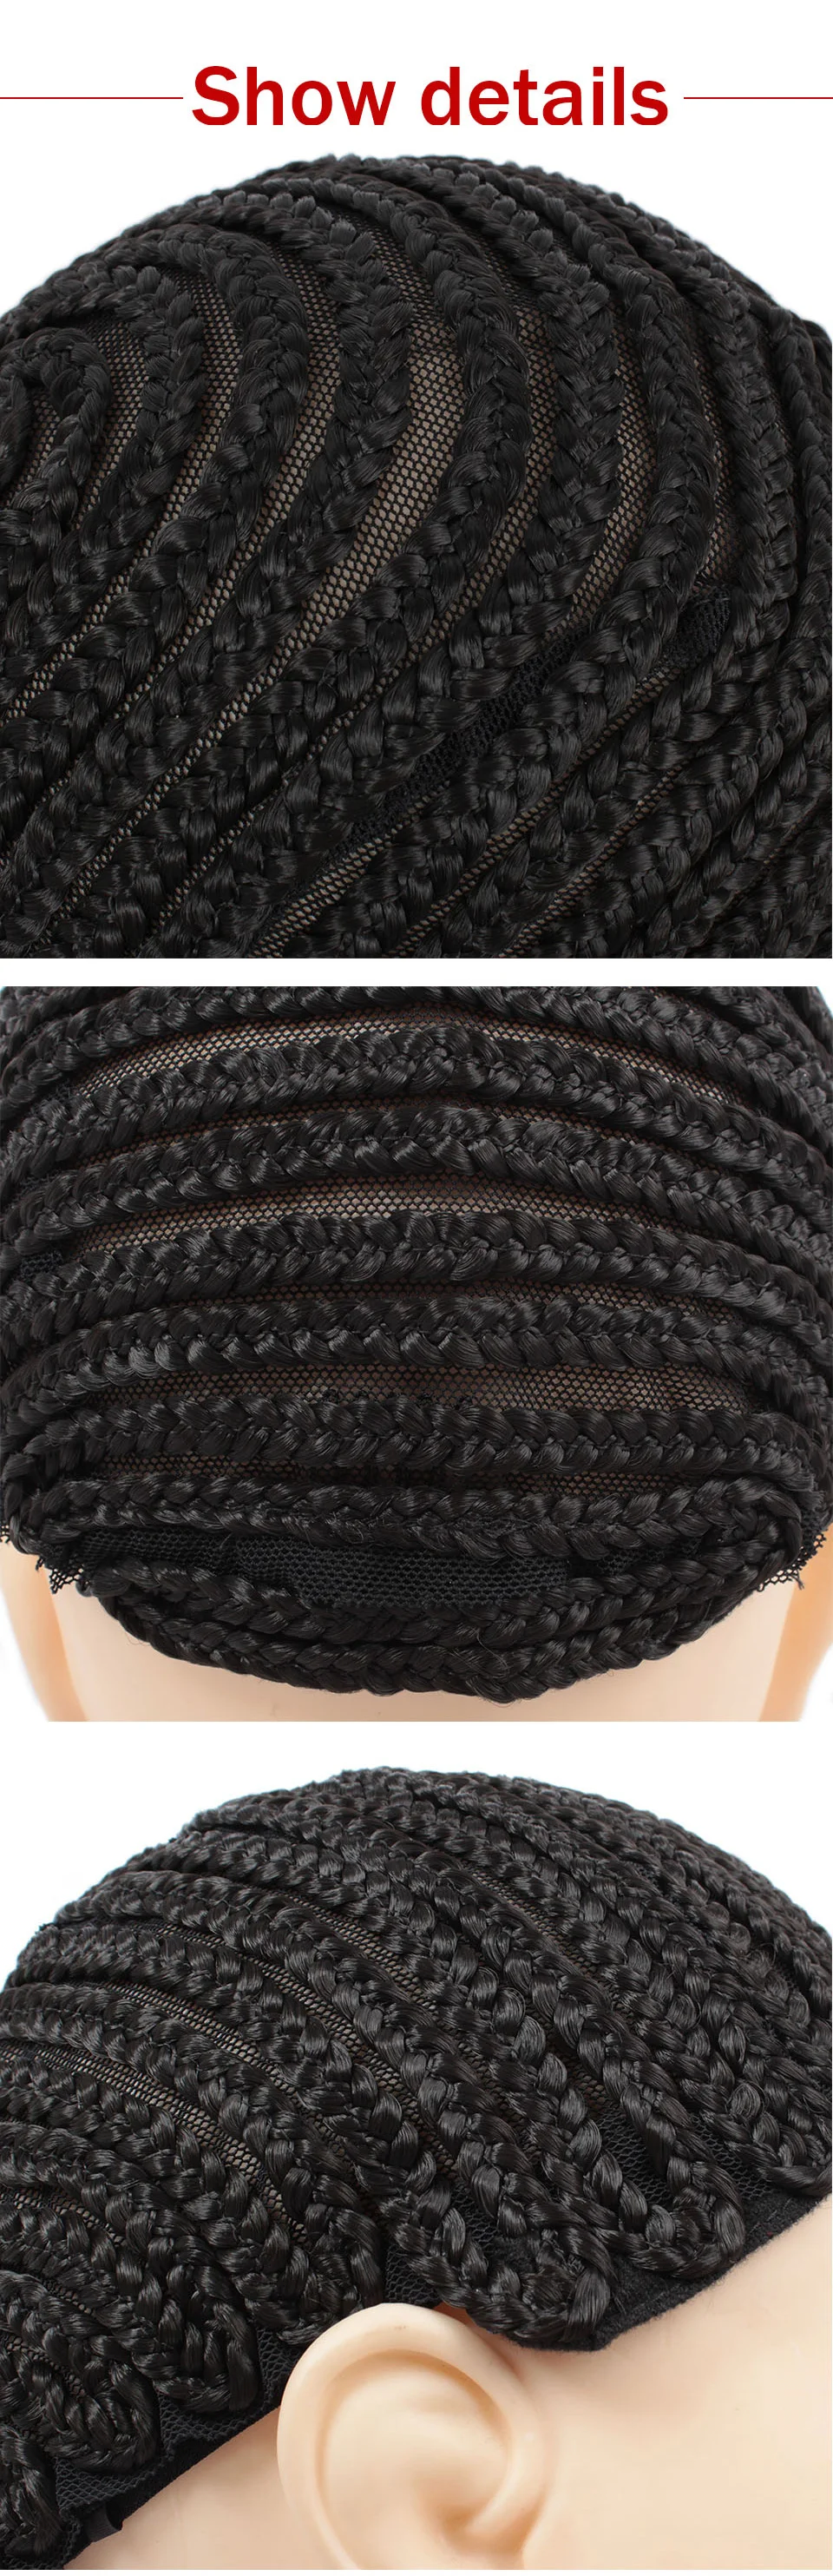 1-10 шт. лучшее качество Черный основа для афрокосичек легче шиньон для волос регулируемый ремень эластичные бесклеевые шапки для волос Плетение Xtrend